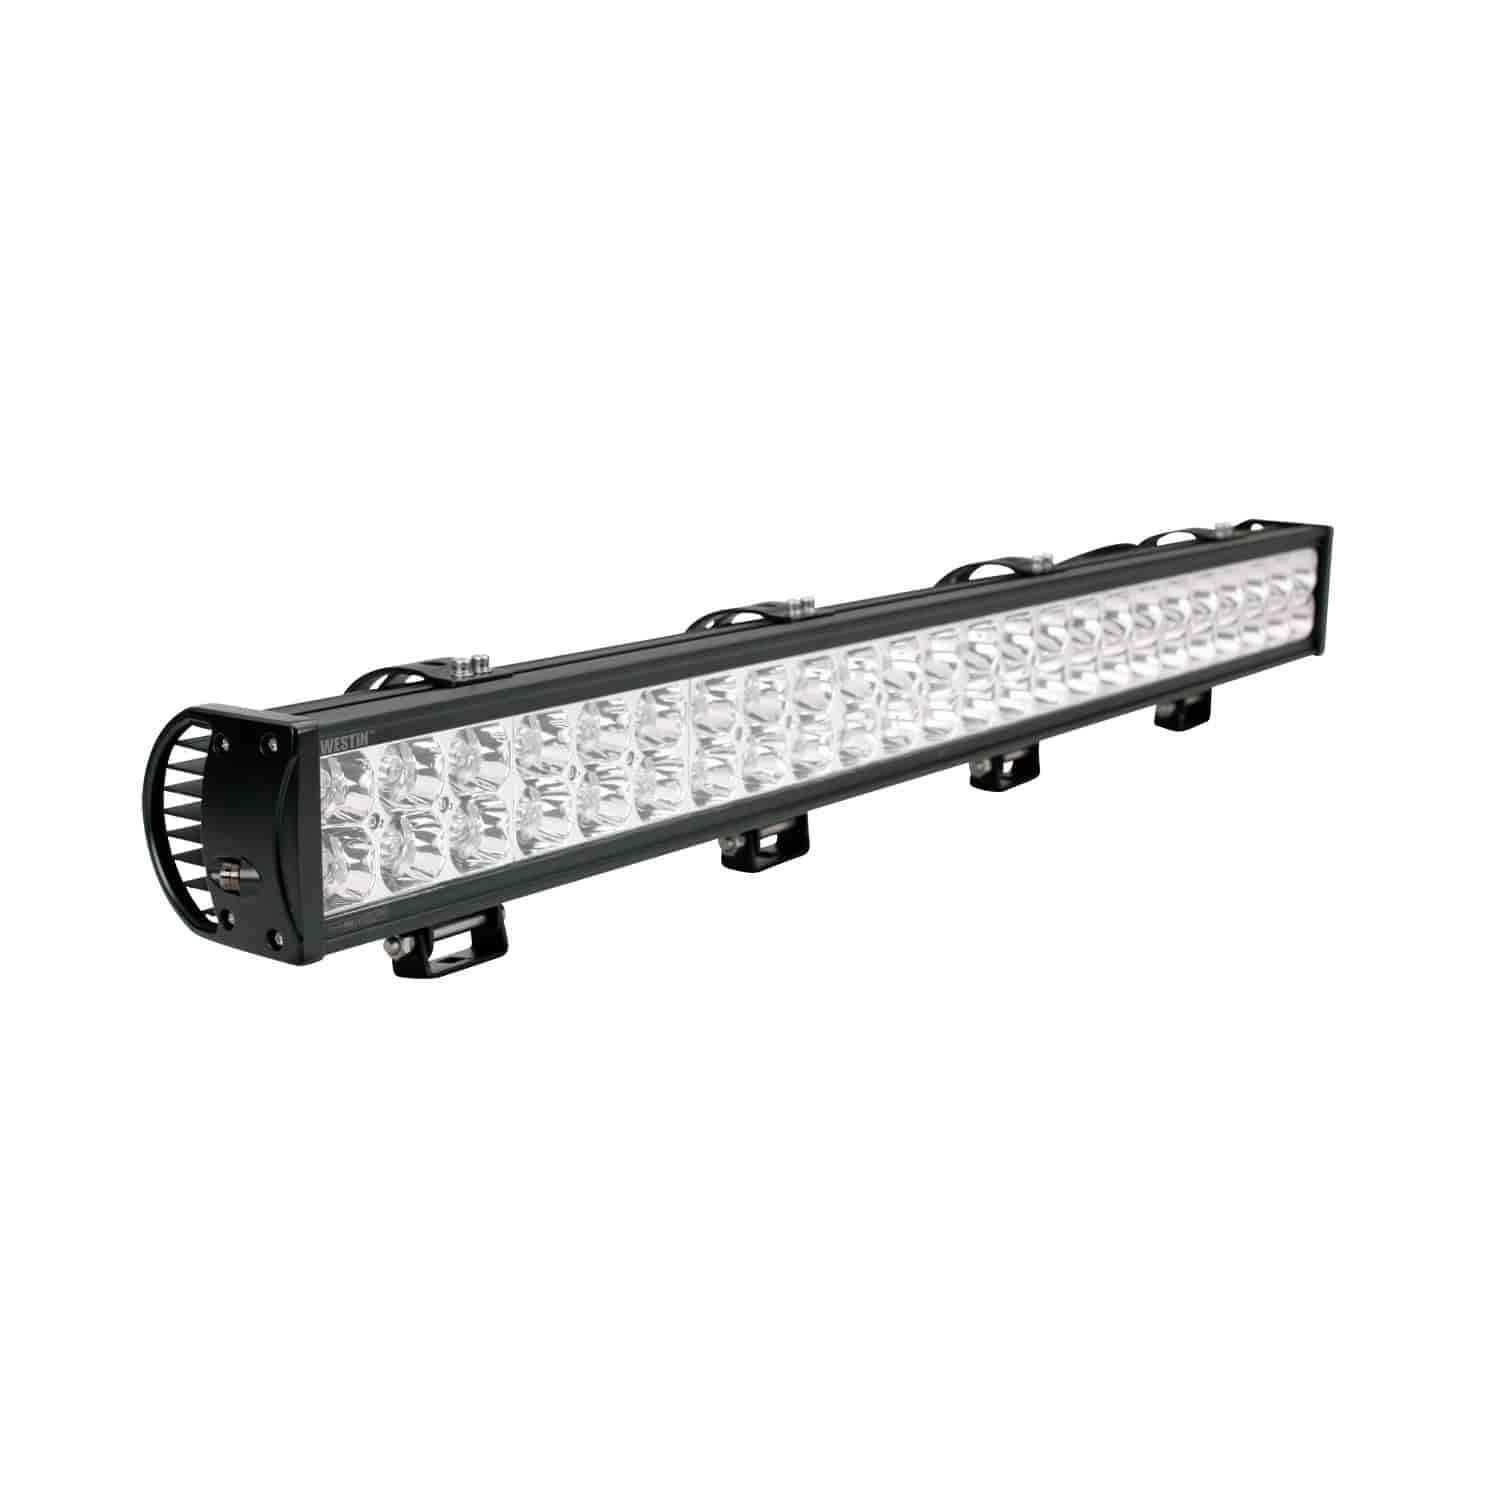 Double-Row LED Light Bar 40" Length